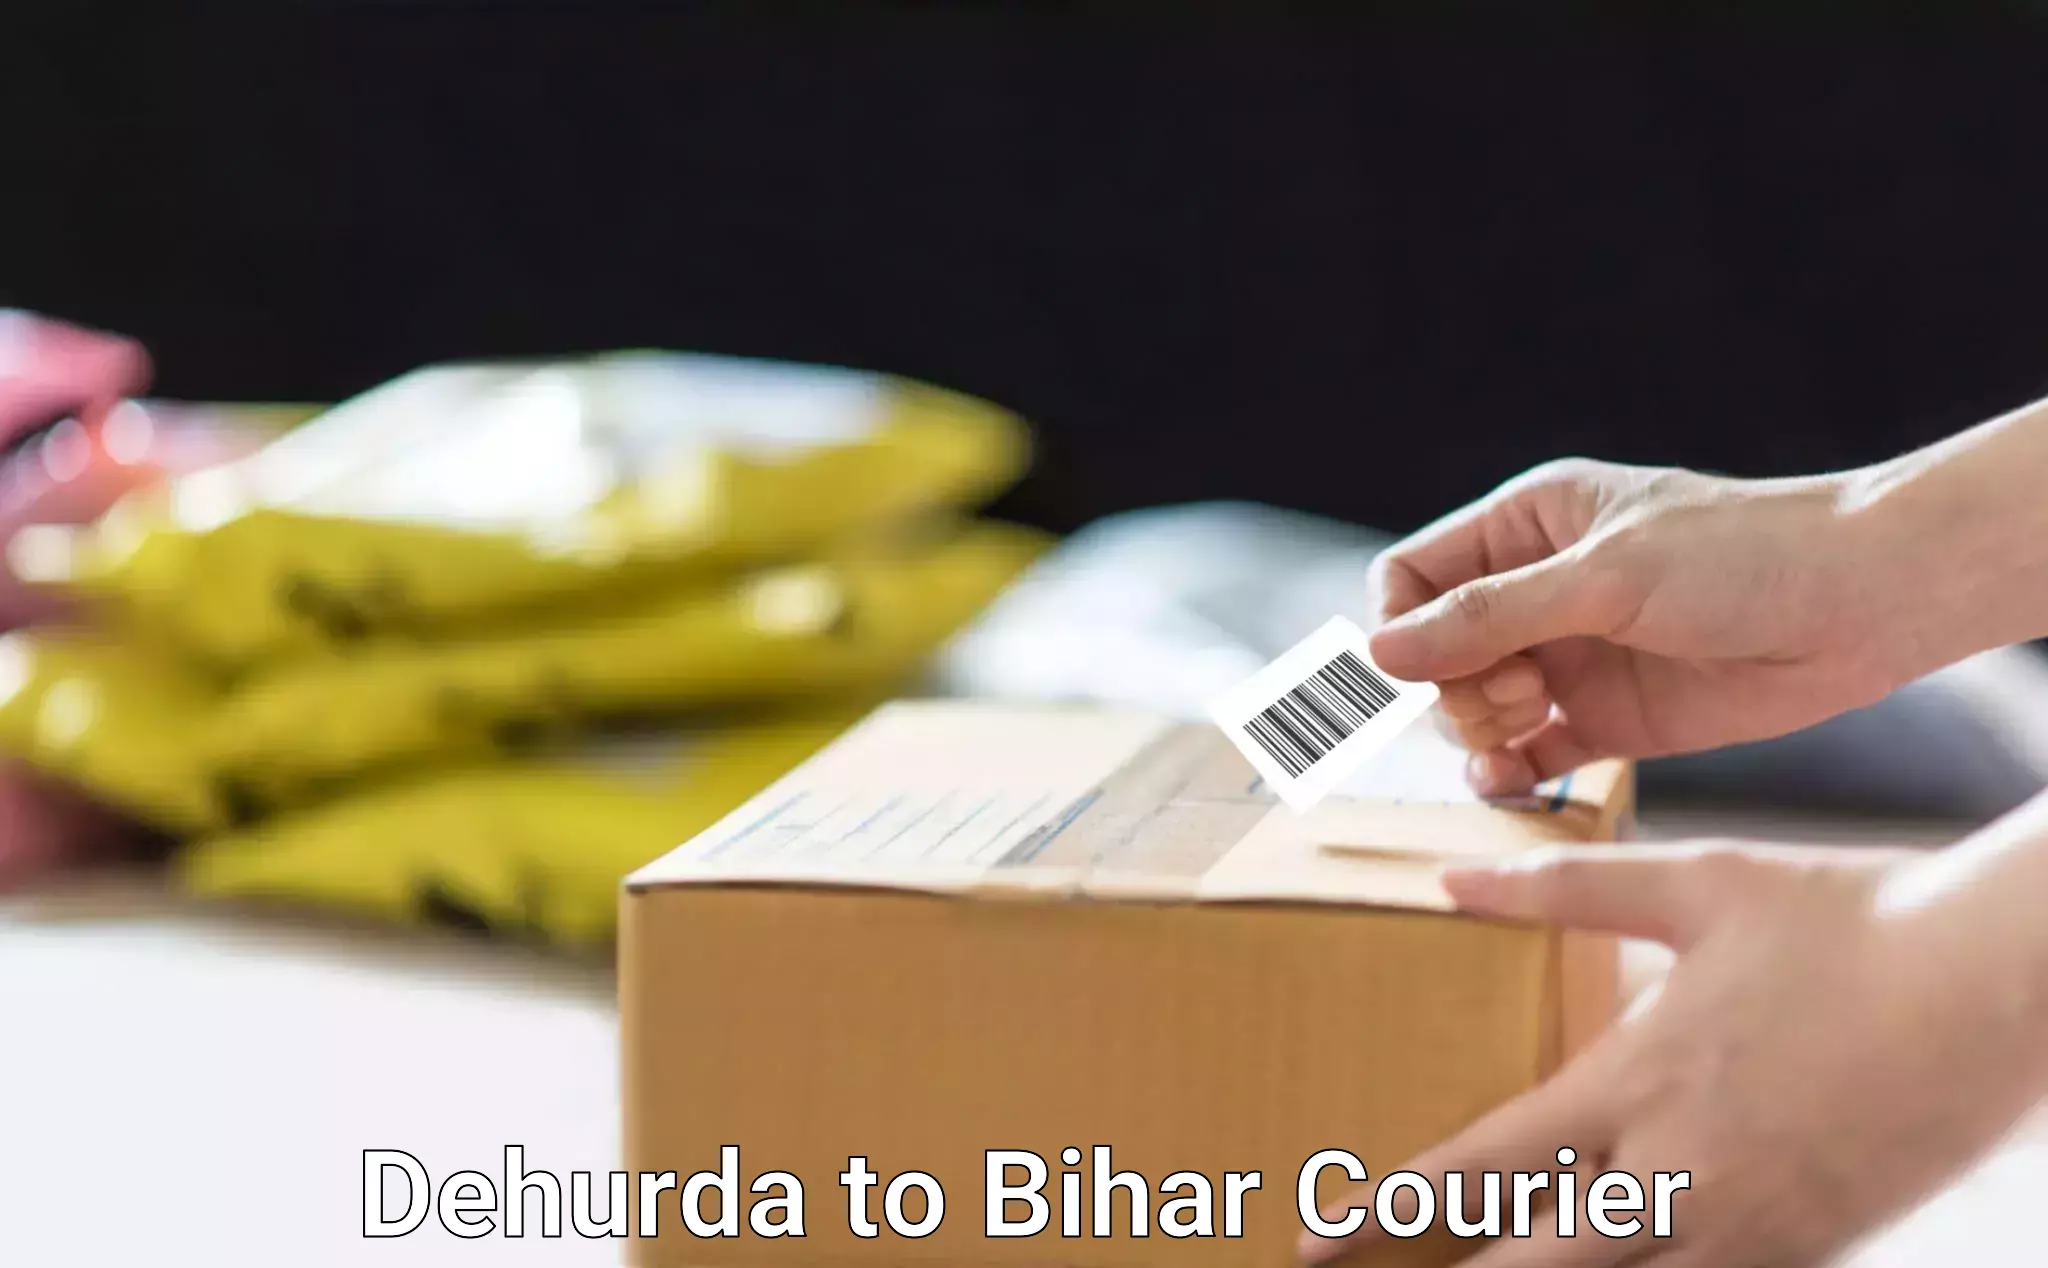 Online courier booking Dehurda to Sharfuddinpur